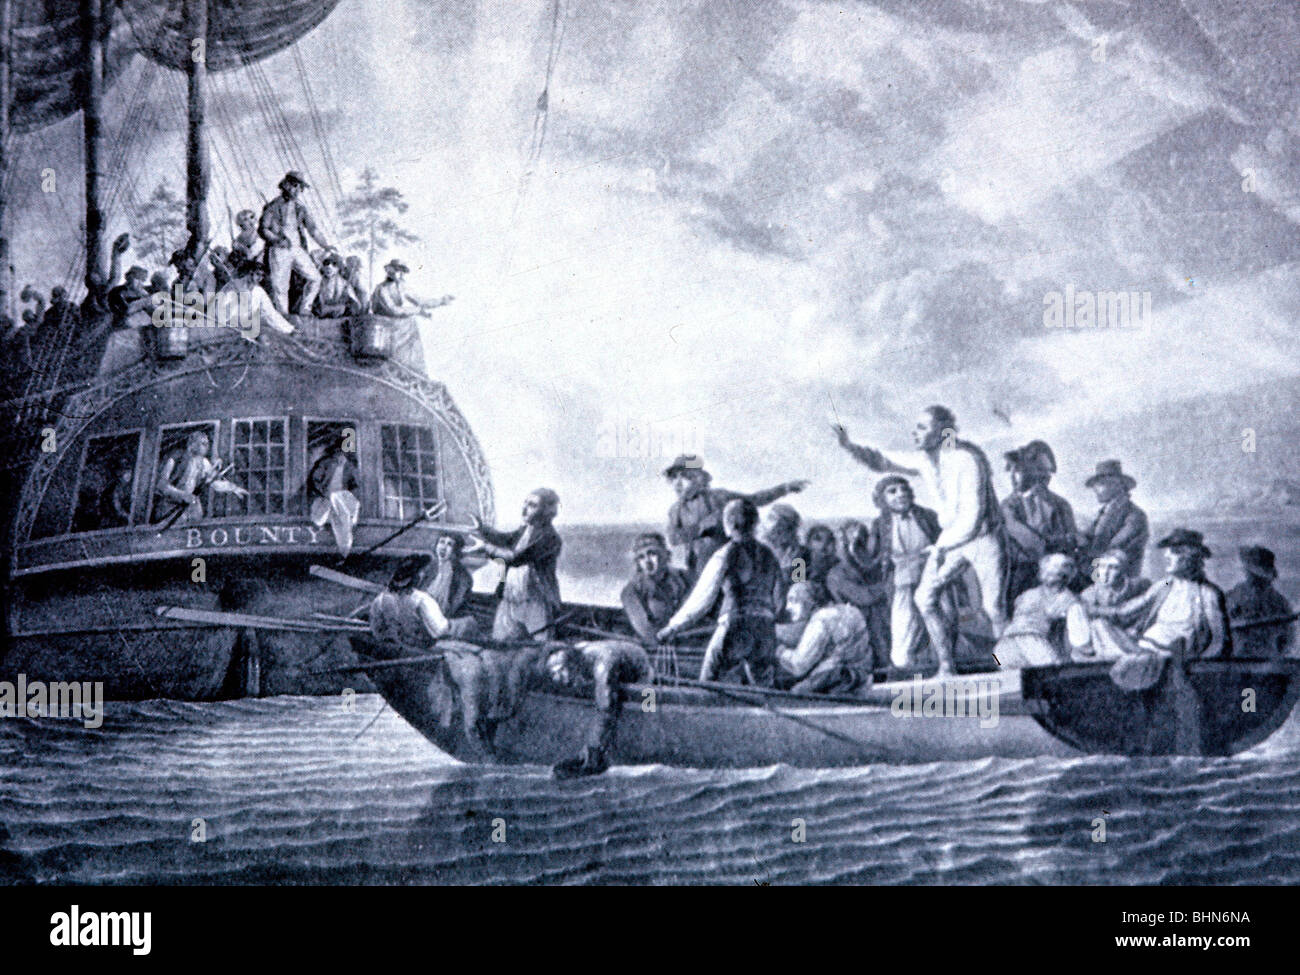 Trasporto / trasporto, navigazione, Mutiny sul Bounty 1789, il capitano, il tenente William Bligh, e le parti leali dell'equipaggio sono costretti a lasciare la nave e salire a bordo del lancio di Bounty, disegno, Foto Stock